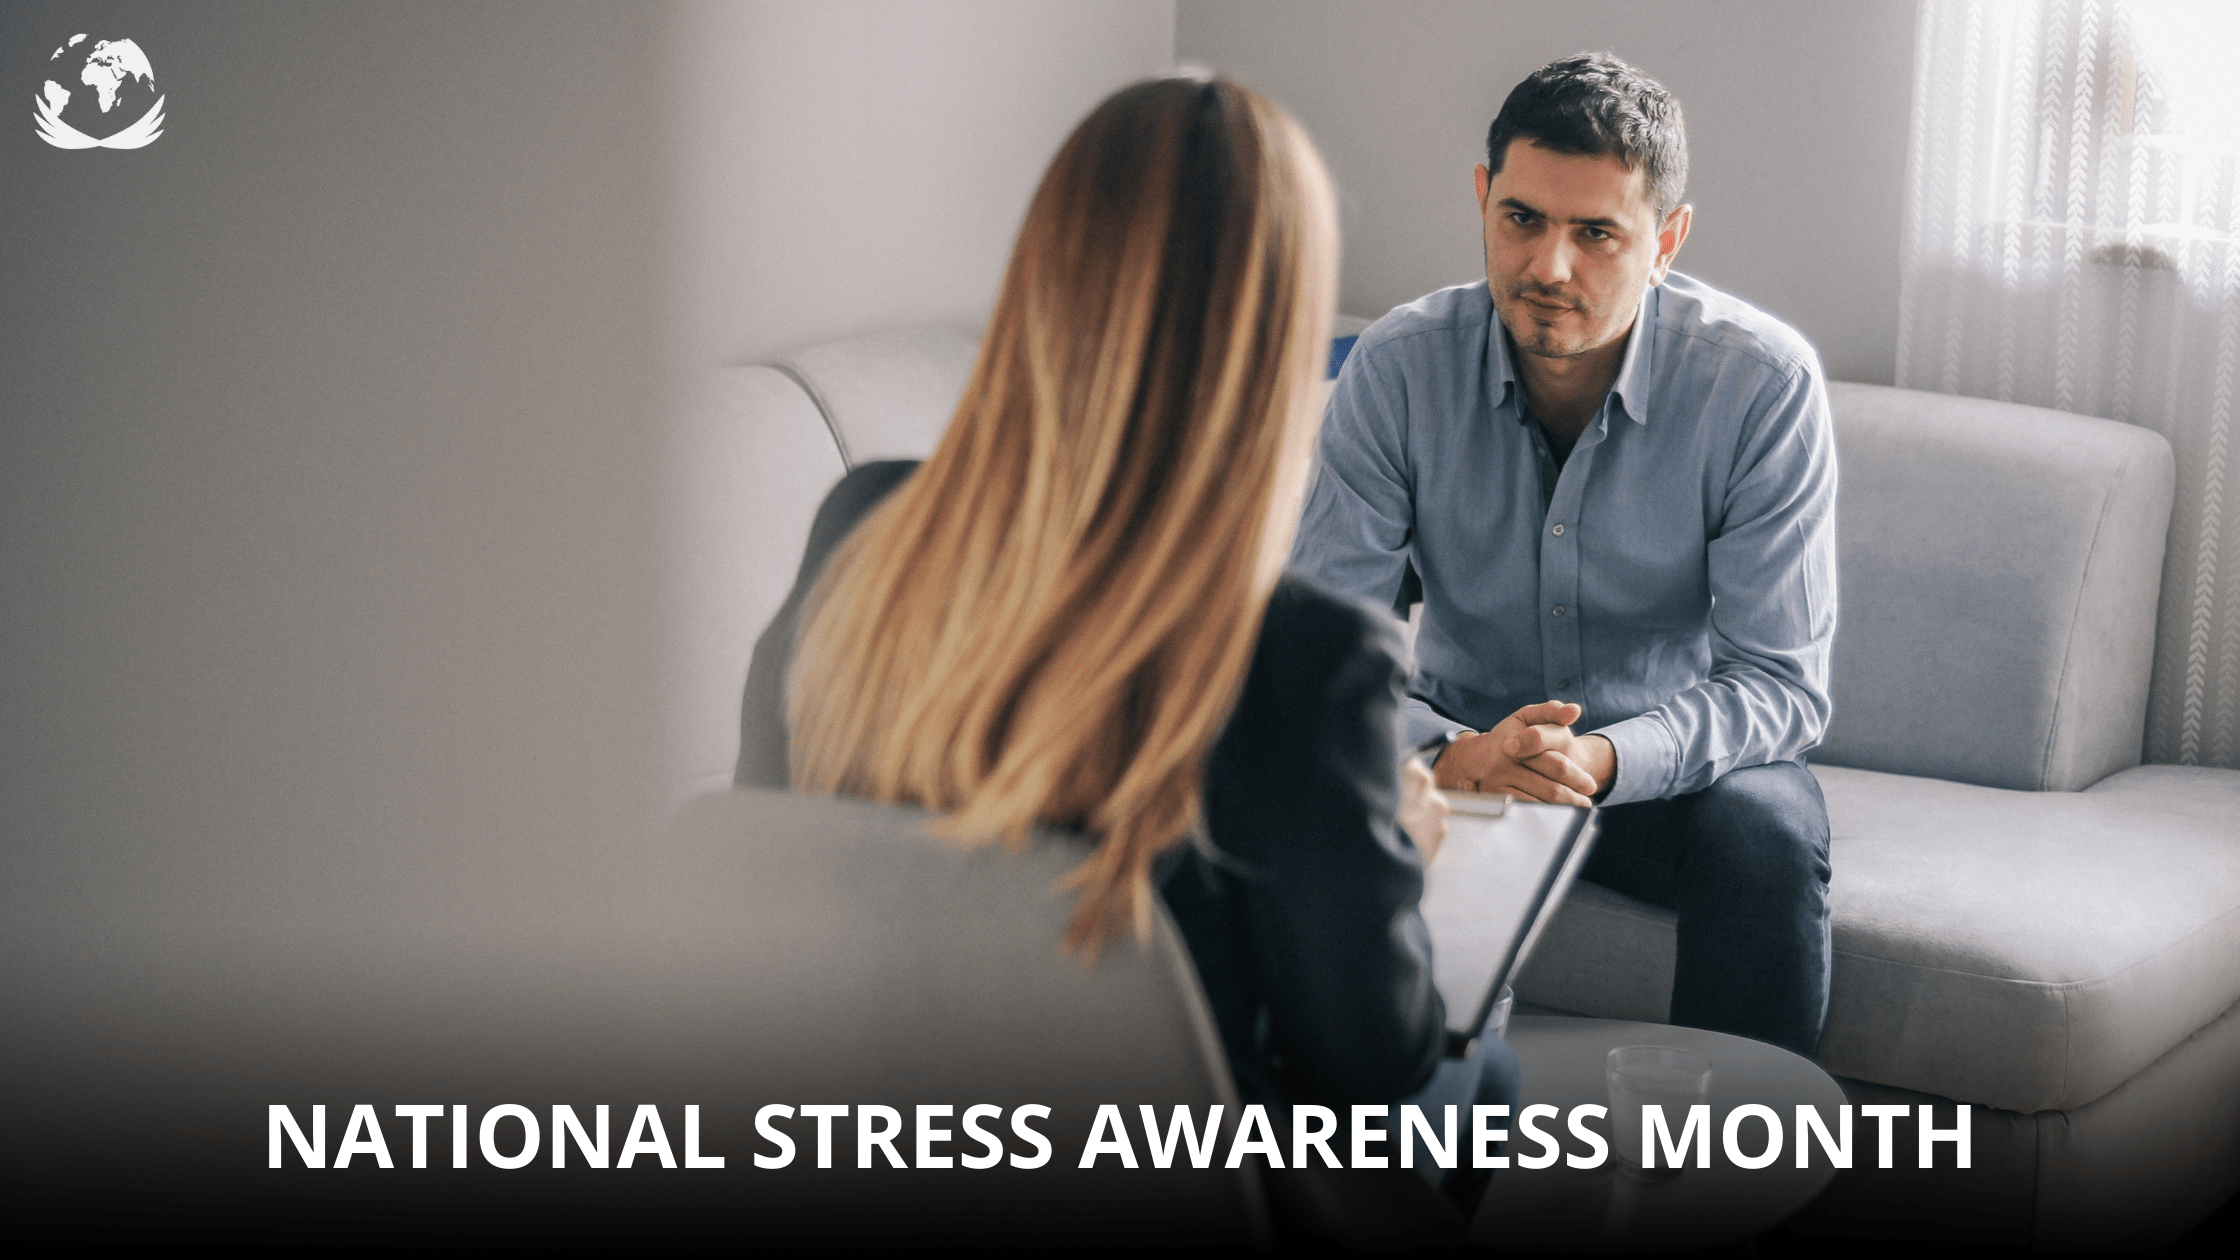 National Stress Awareness Month